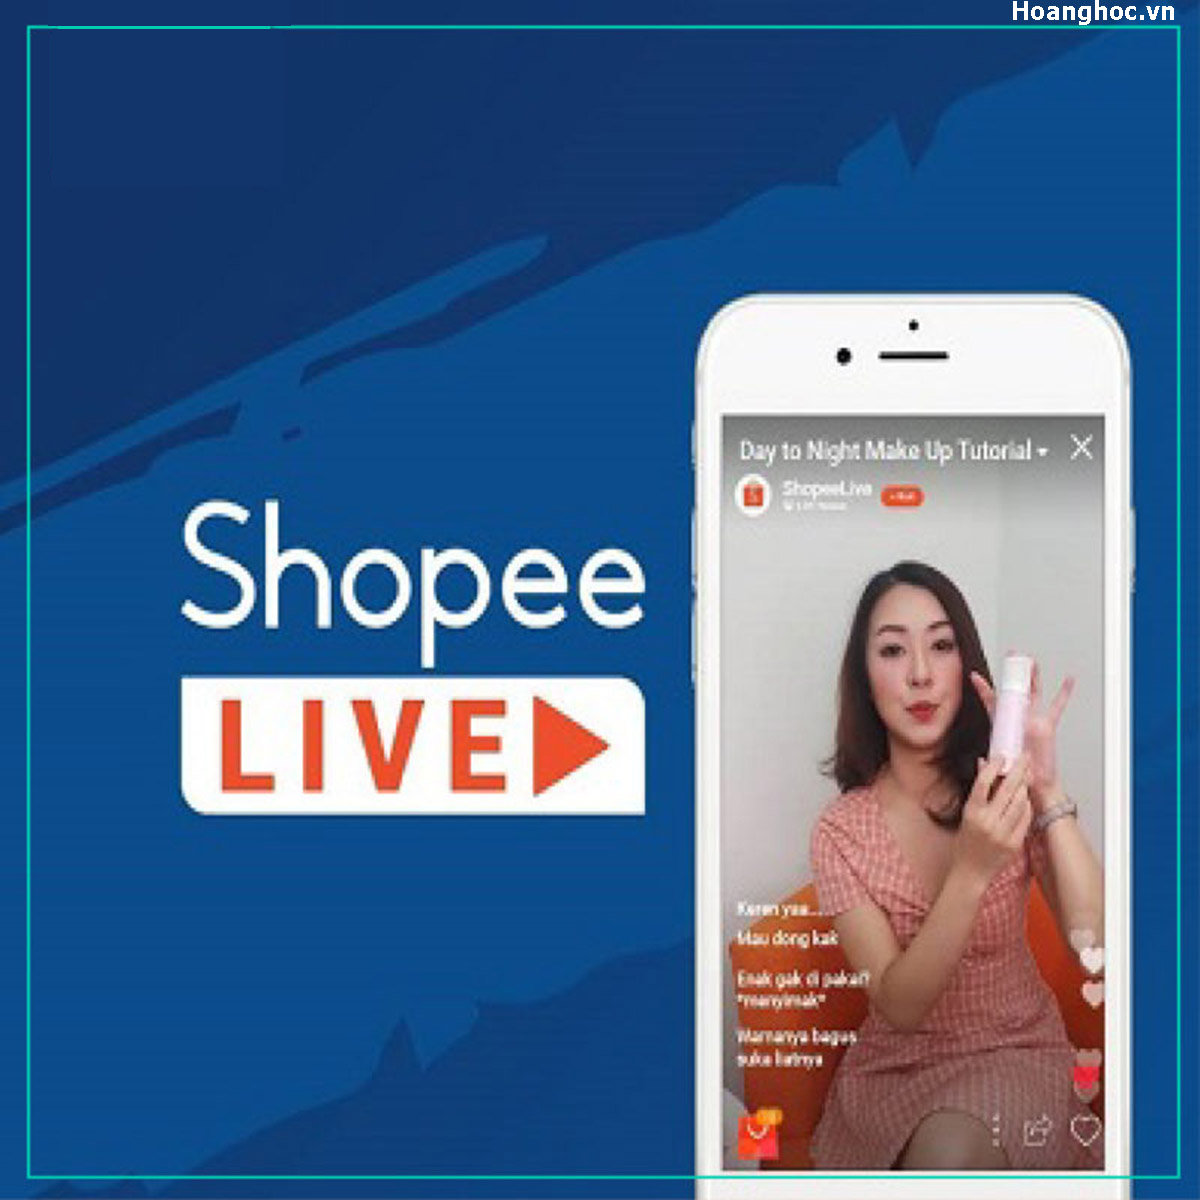 Cách đăng ký Shopee Live để bán hàng hiệu quả